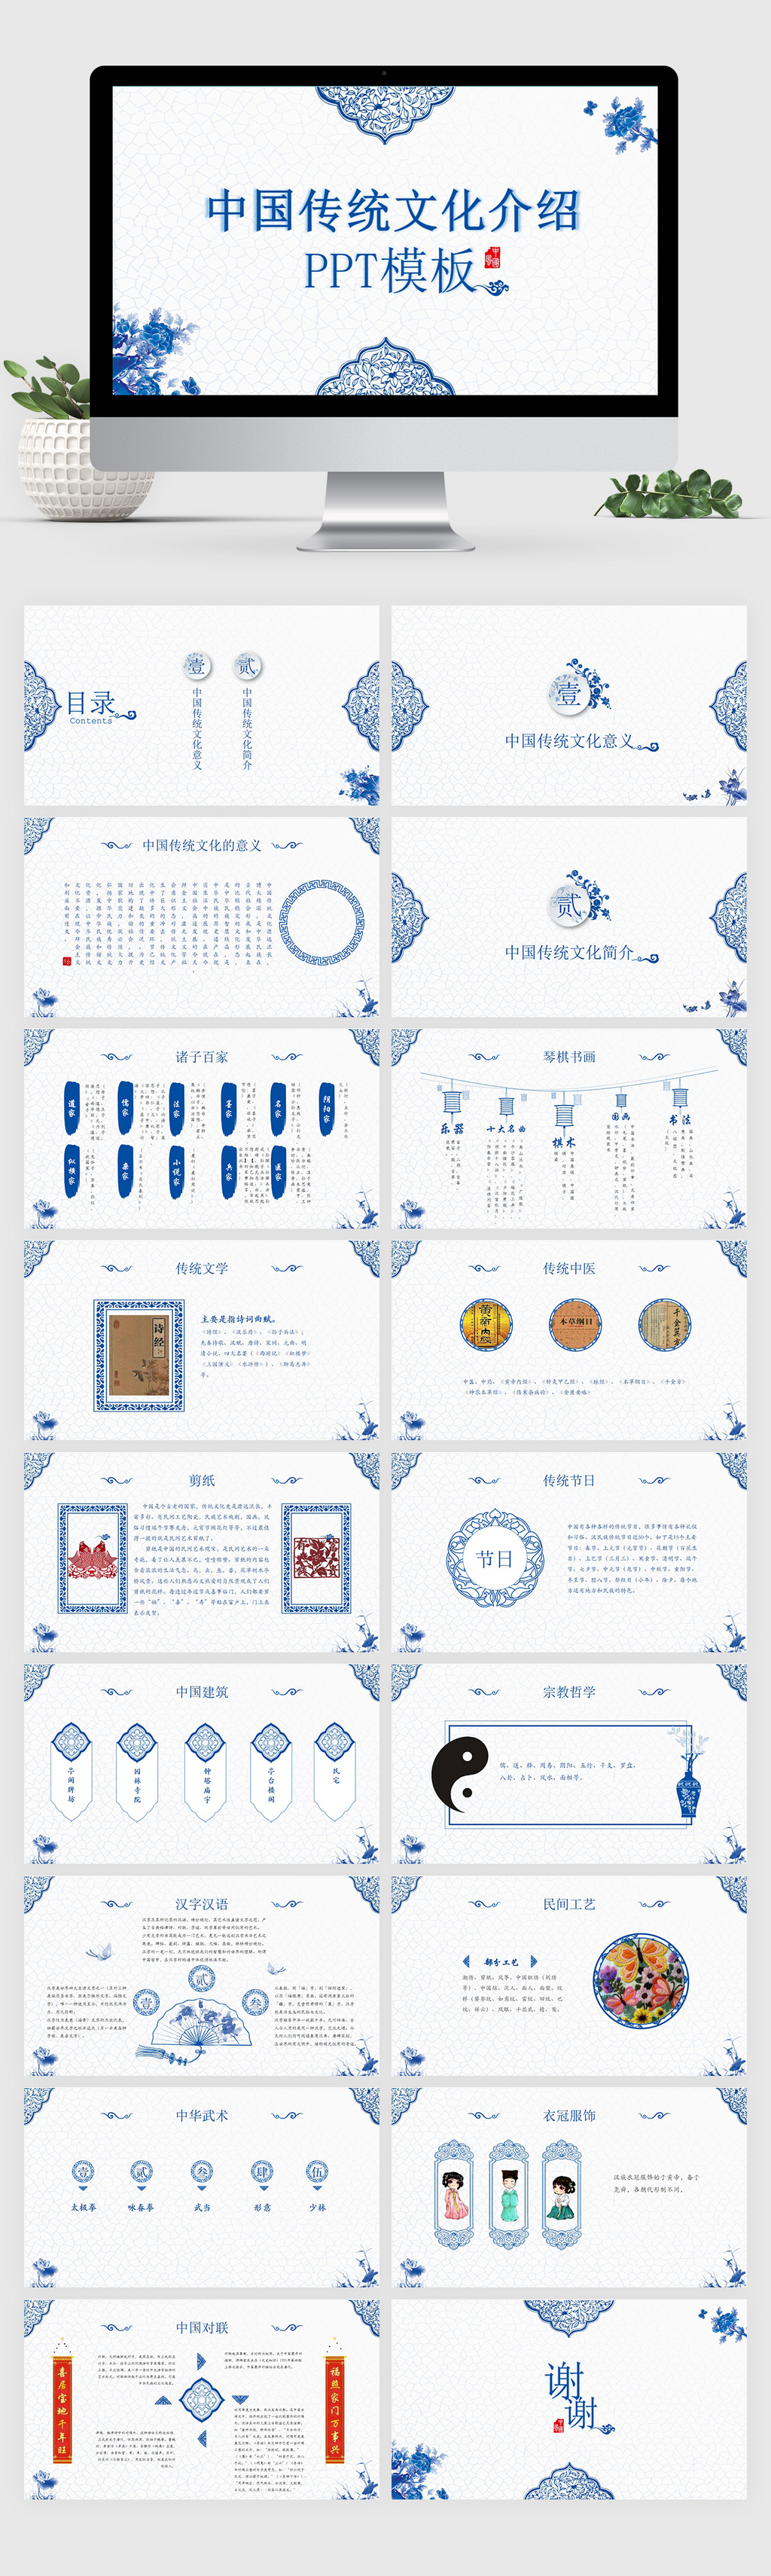 简约大气中国传统文化介绍PPT模板